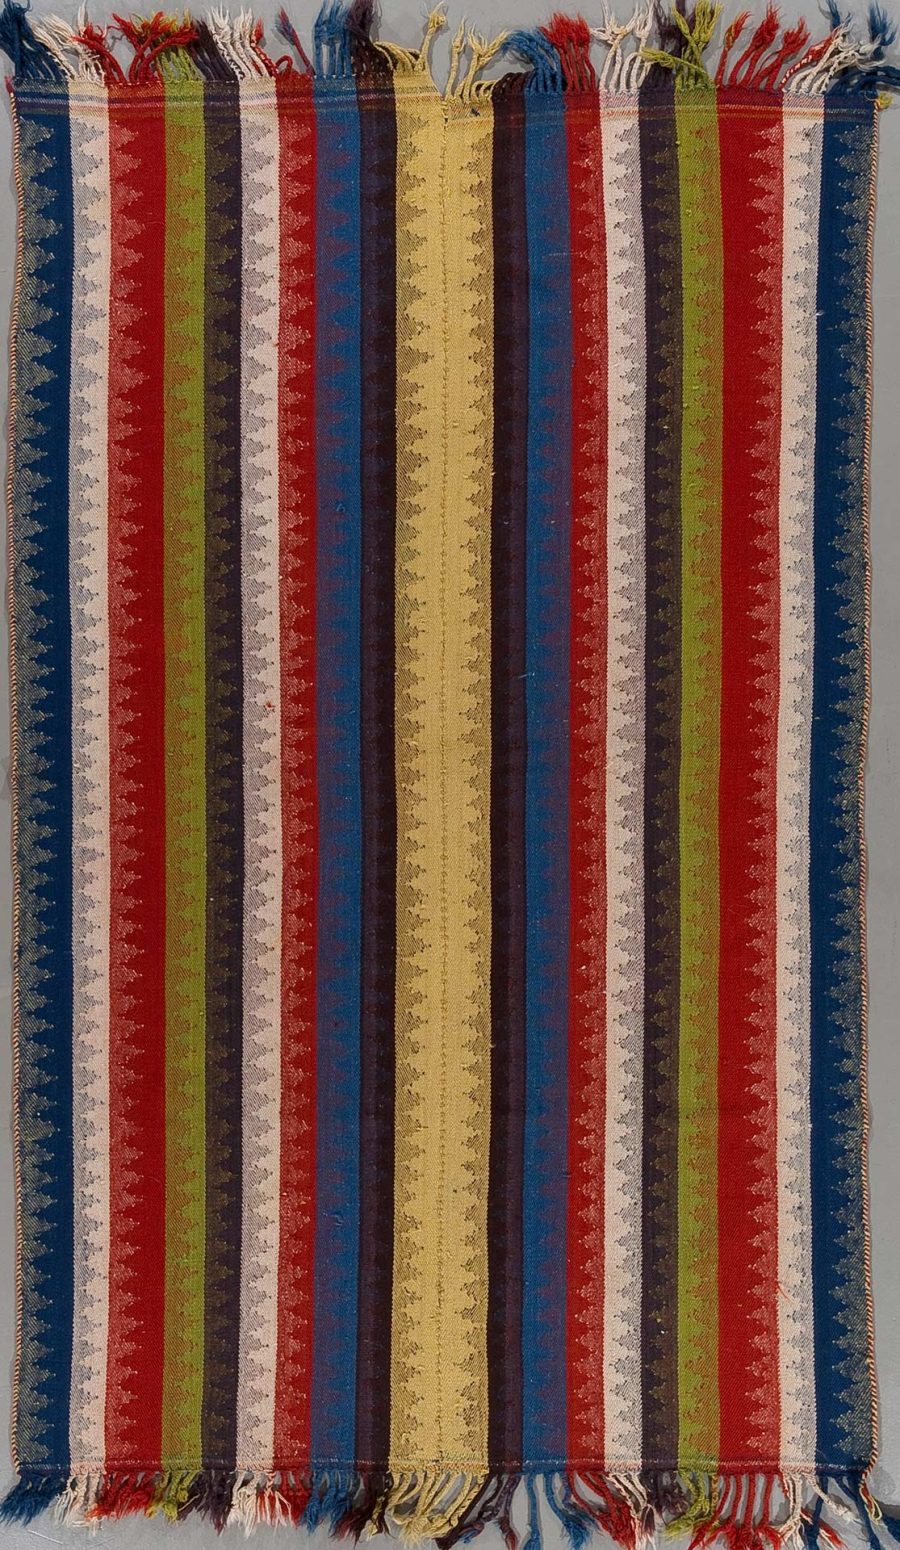 Vertikal gestreifter handgewebter Teppich mit fransigen Enden und Streifen in verschiedenen Farben wie Blau, Rot, Grün, Gelb und Beige, die durch schmale weiße Trennlinien segmentiert sind.